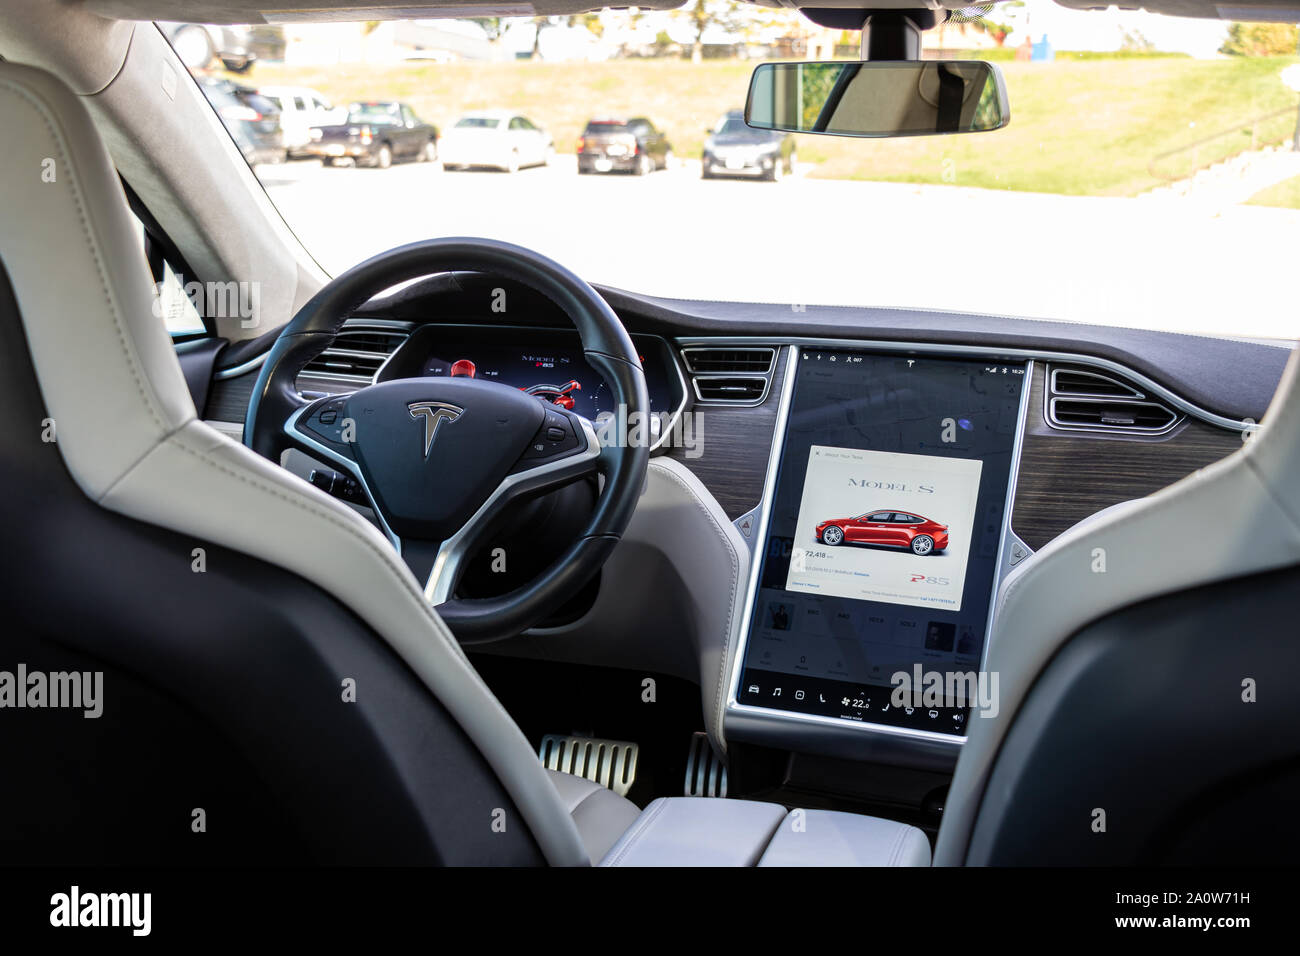 Die Innenseite des Tesla Model S durch die Vorderseite gesehen - Sitze mit Informationen über die digitale High-Tech-Dashboards. Stockfoto